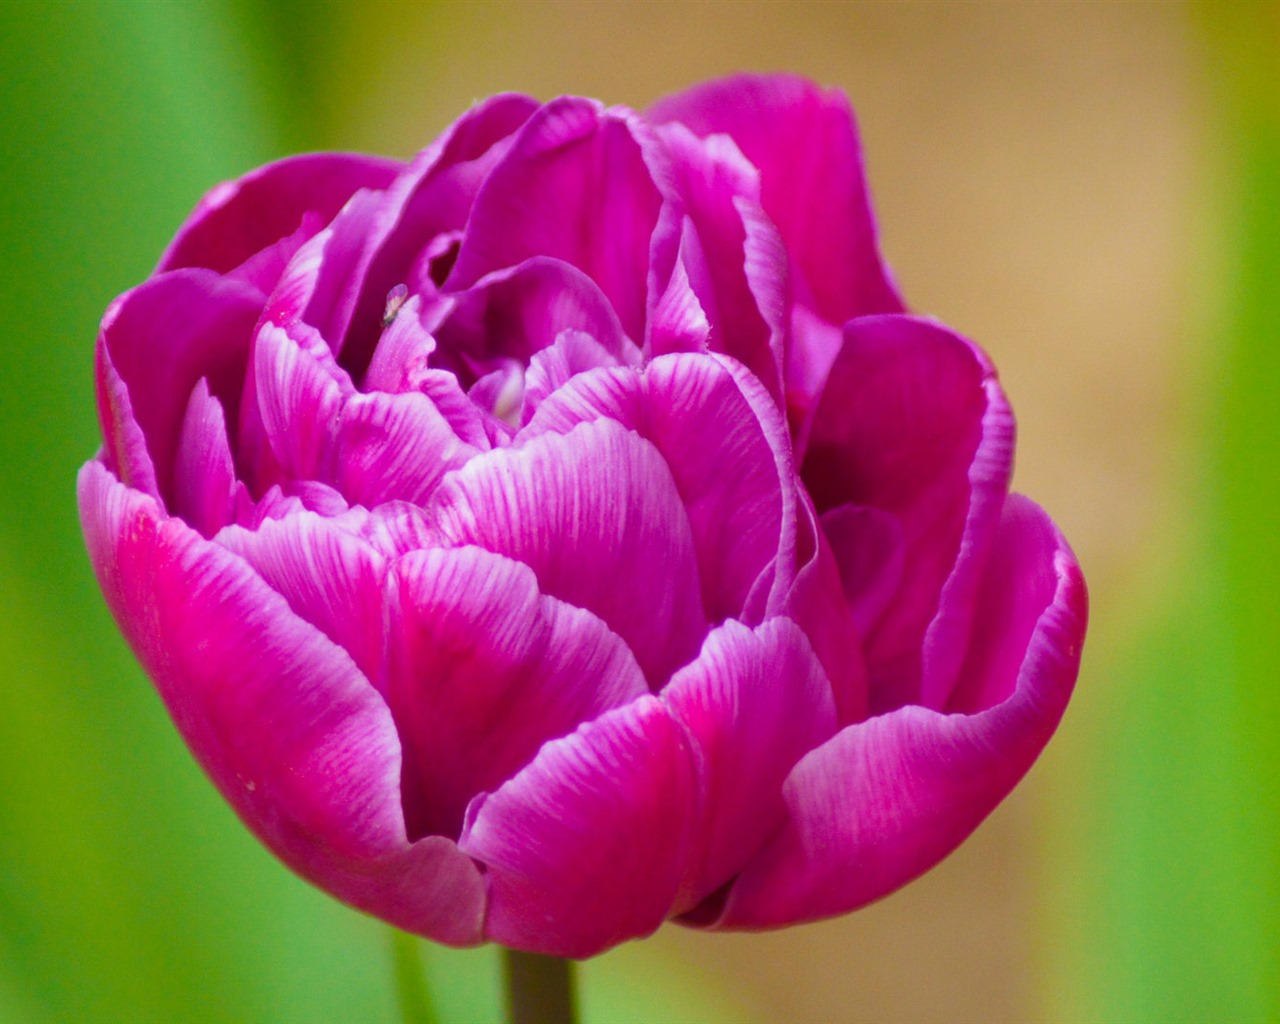 Fondos de pantalla HD de flores tulipanes frescos y coloridos #11 - 1280x1024